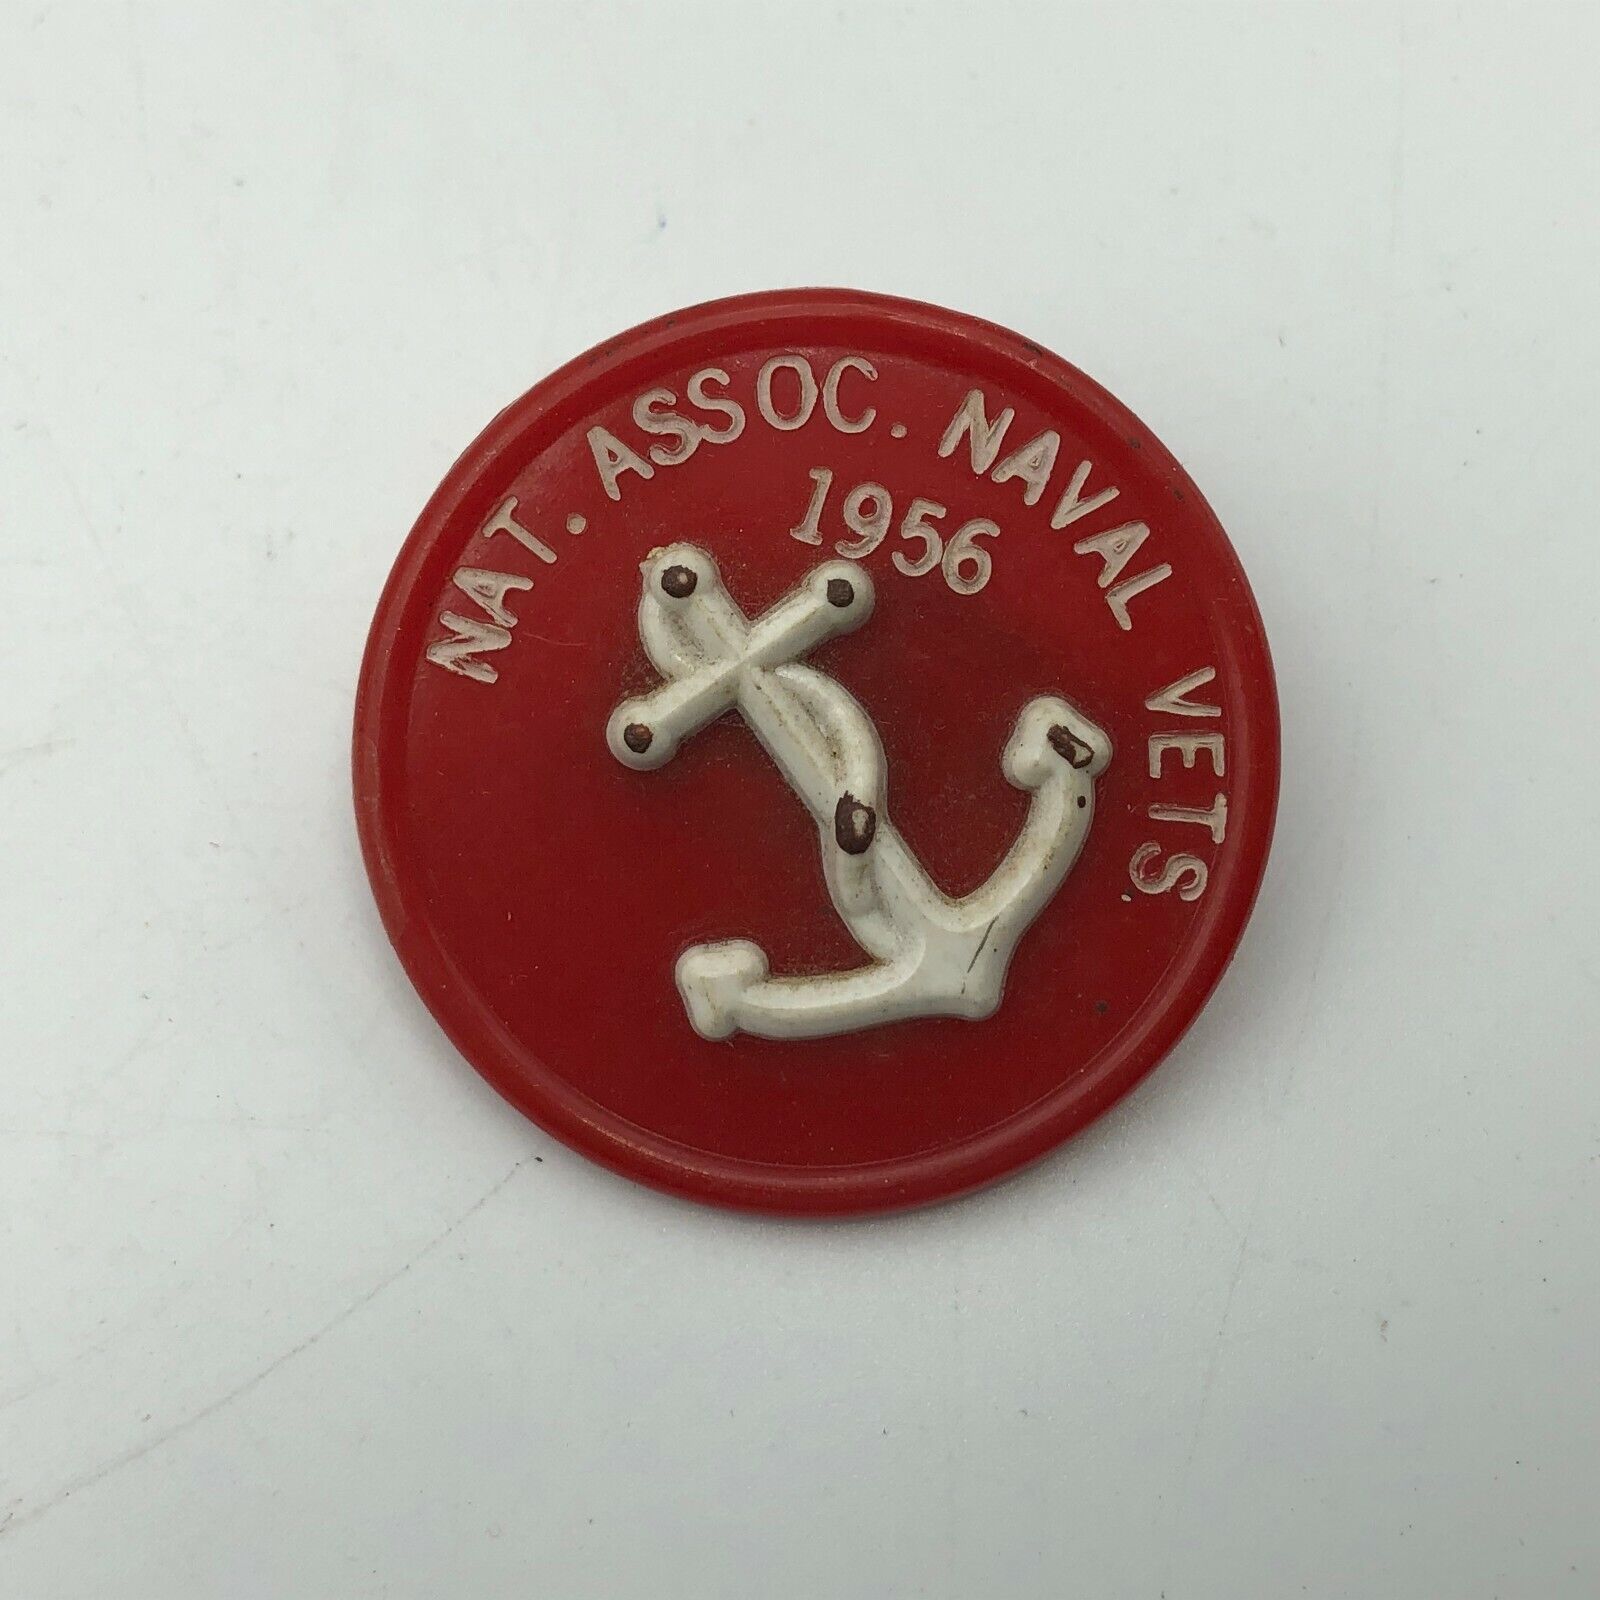 1956 Nat Assoc Naval Vets Mooring Member Pin Badge Vintage US Navy USN   N9 